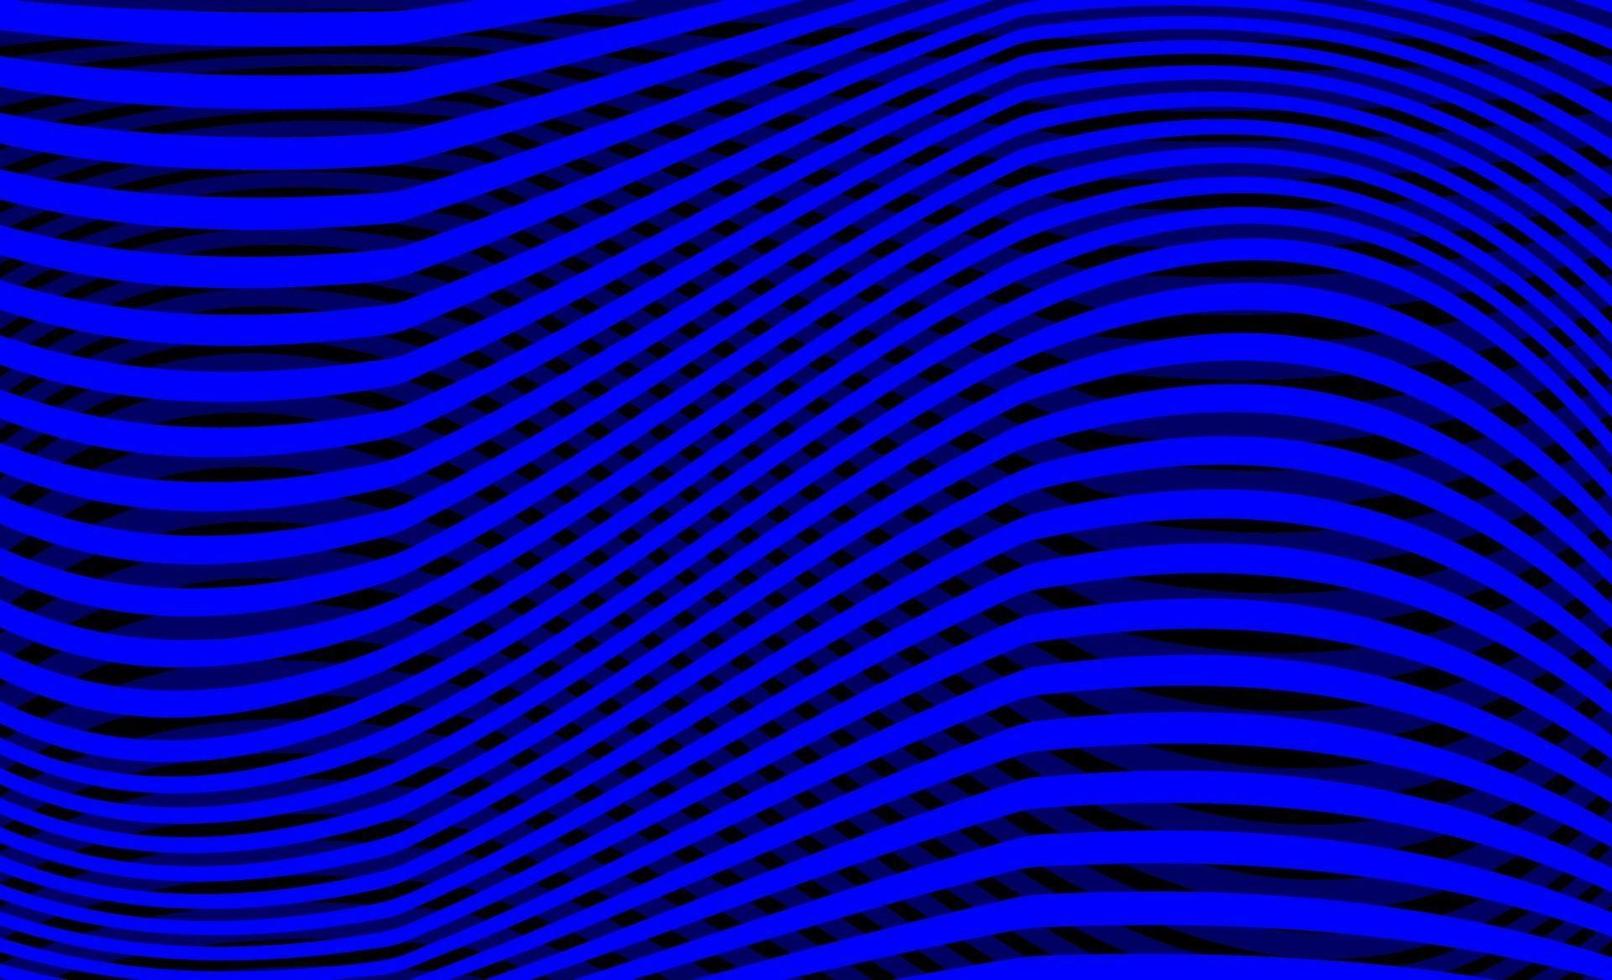 fundo abstrato simples com linhas onduladas em azul escuro vetor